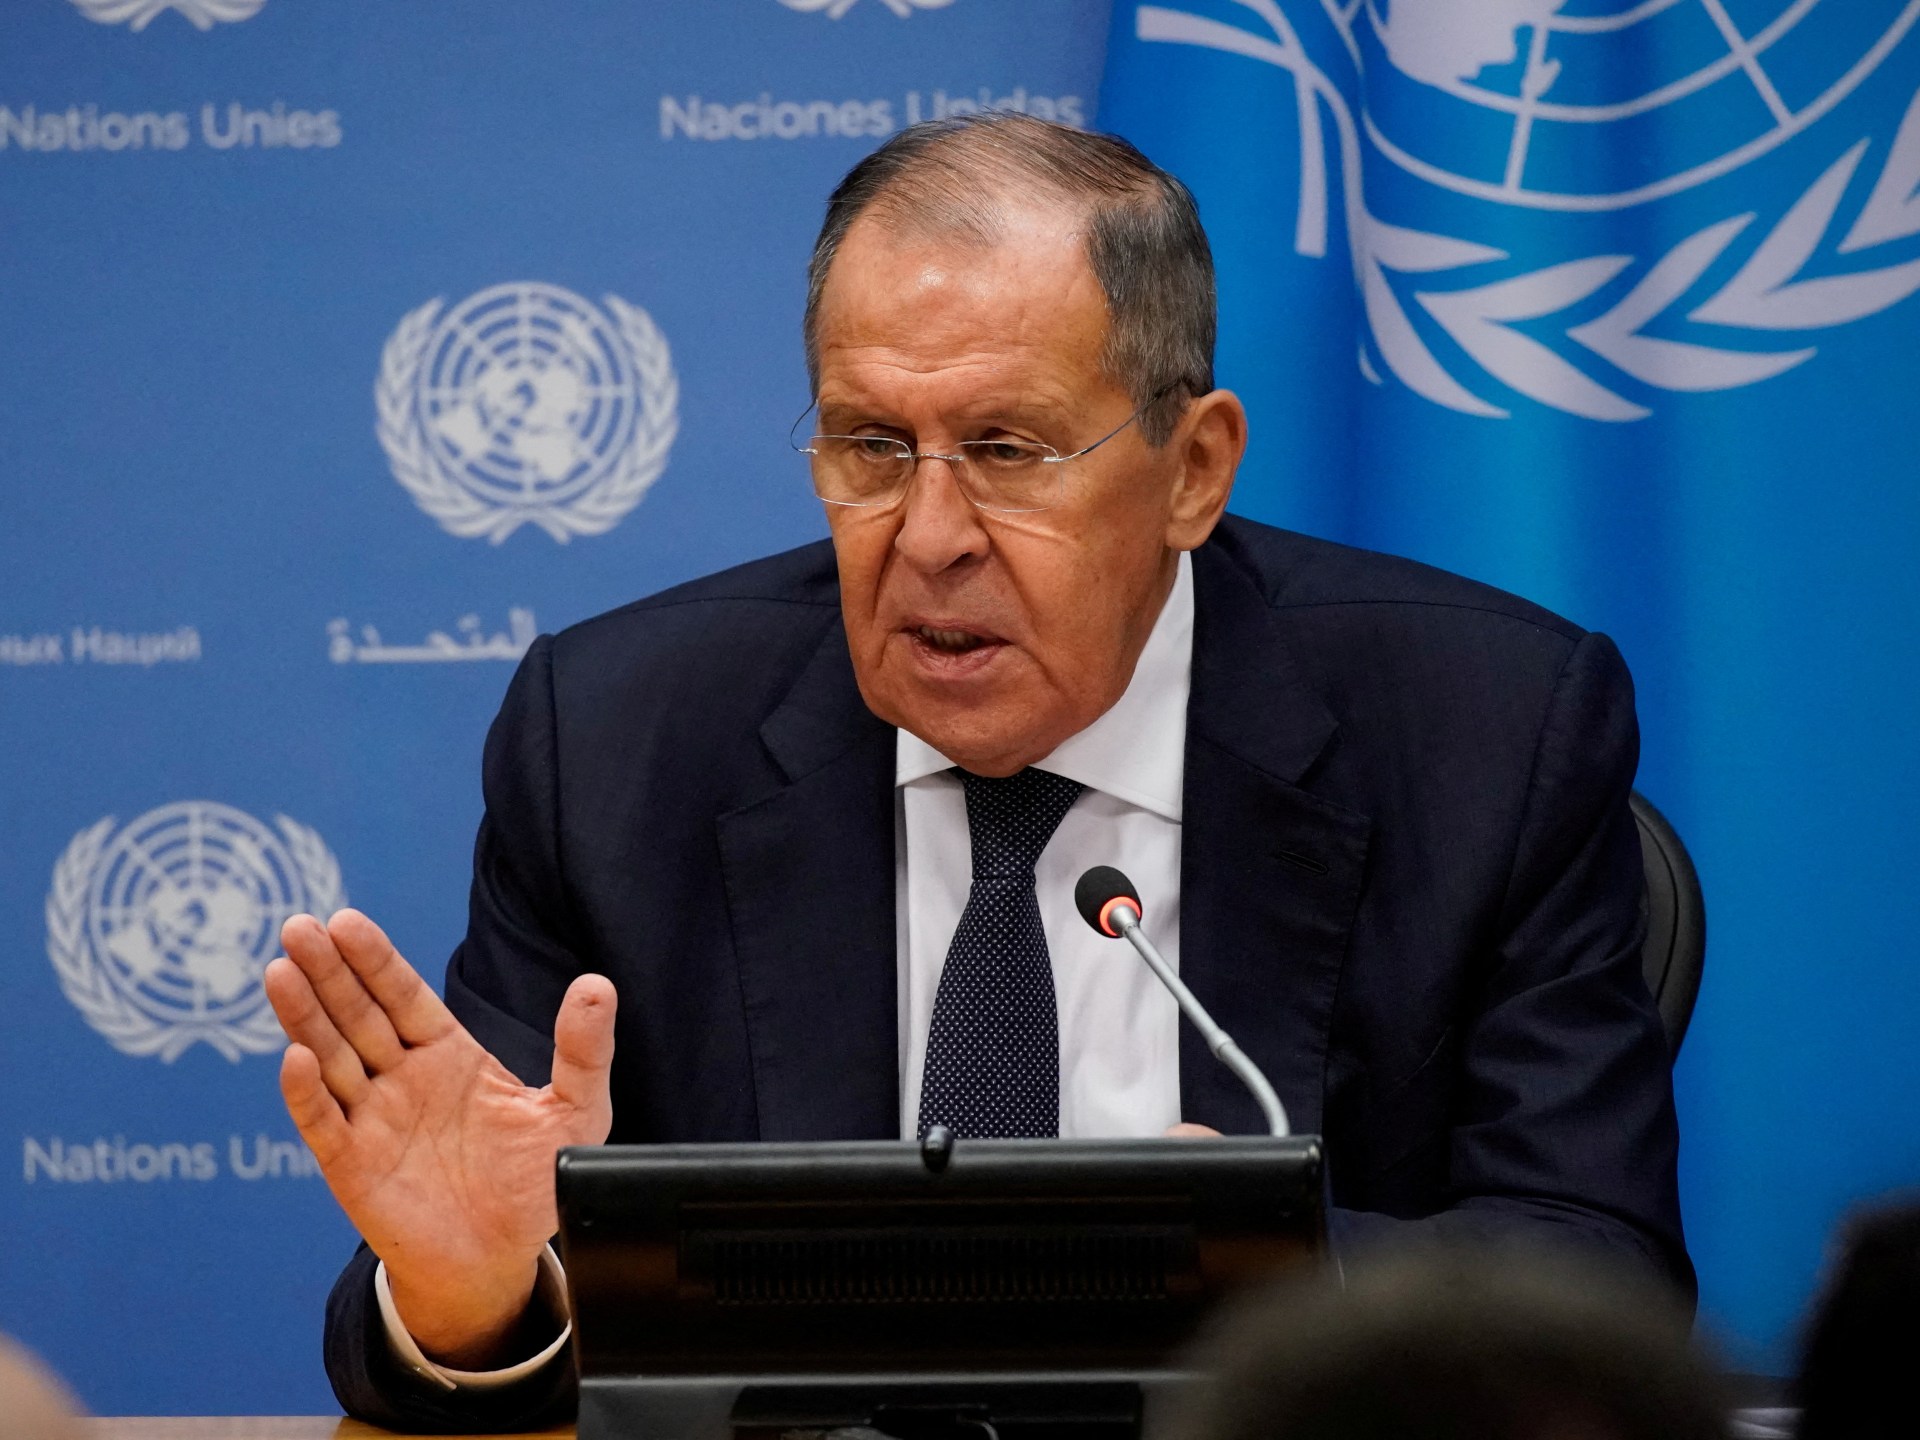 Il russo Lavrov respinge la proposta americana di riprendere i colloqui sulle armi nucleari  Notizie sulla guerra russo-ucraina